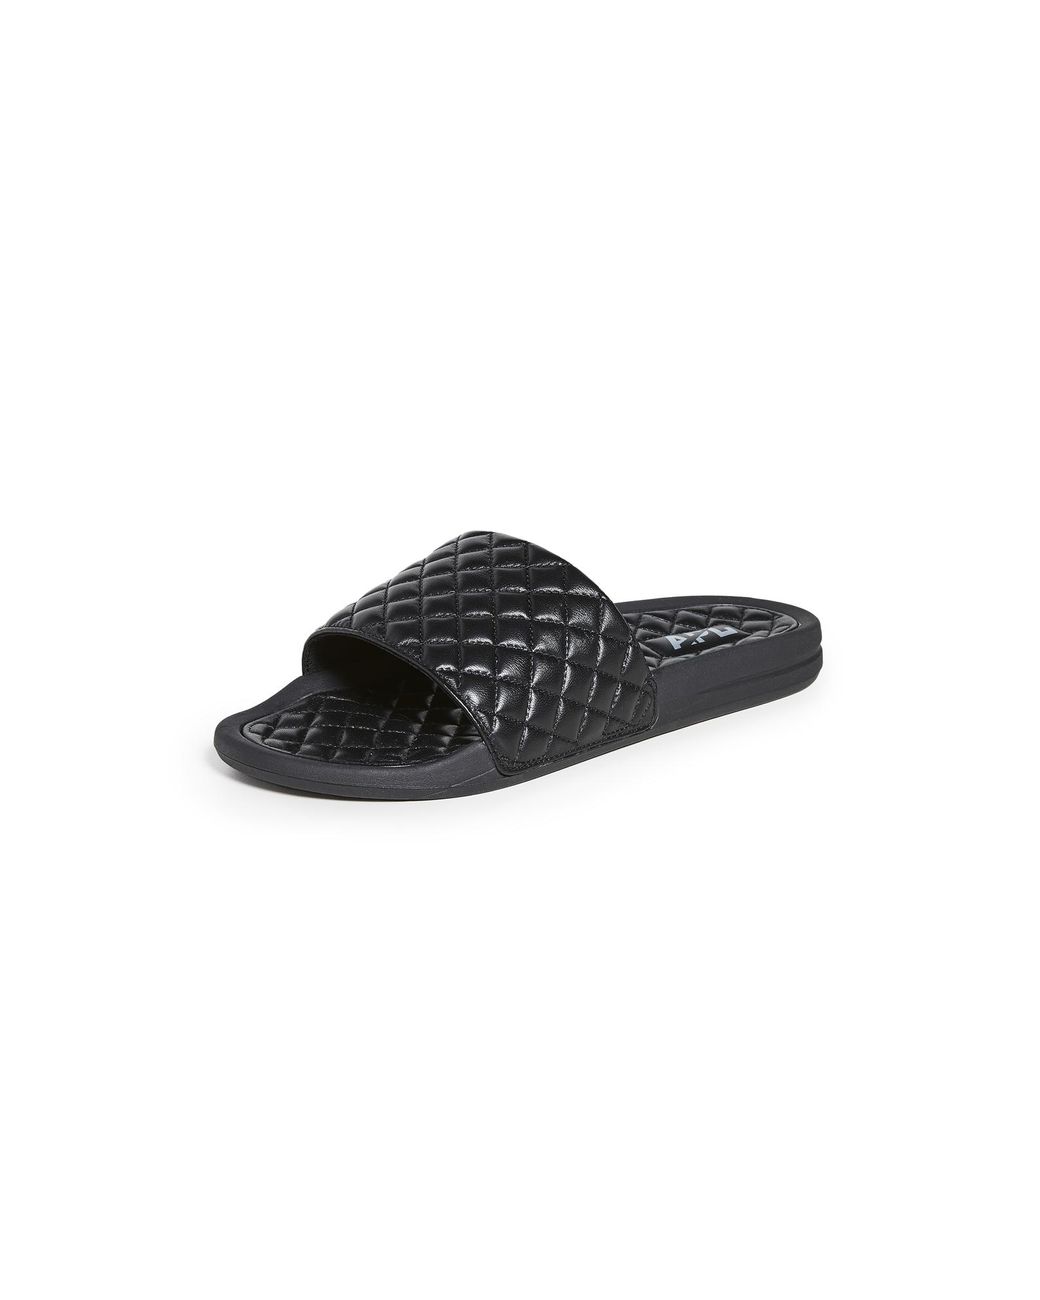 APL Shoes Lusso Slides in Black for Men - Lyst